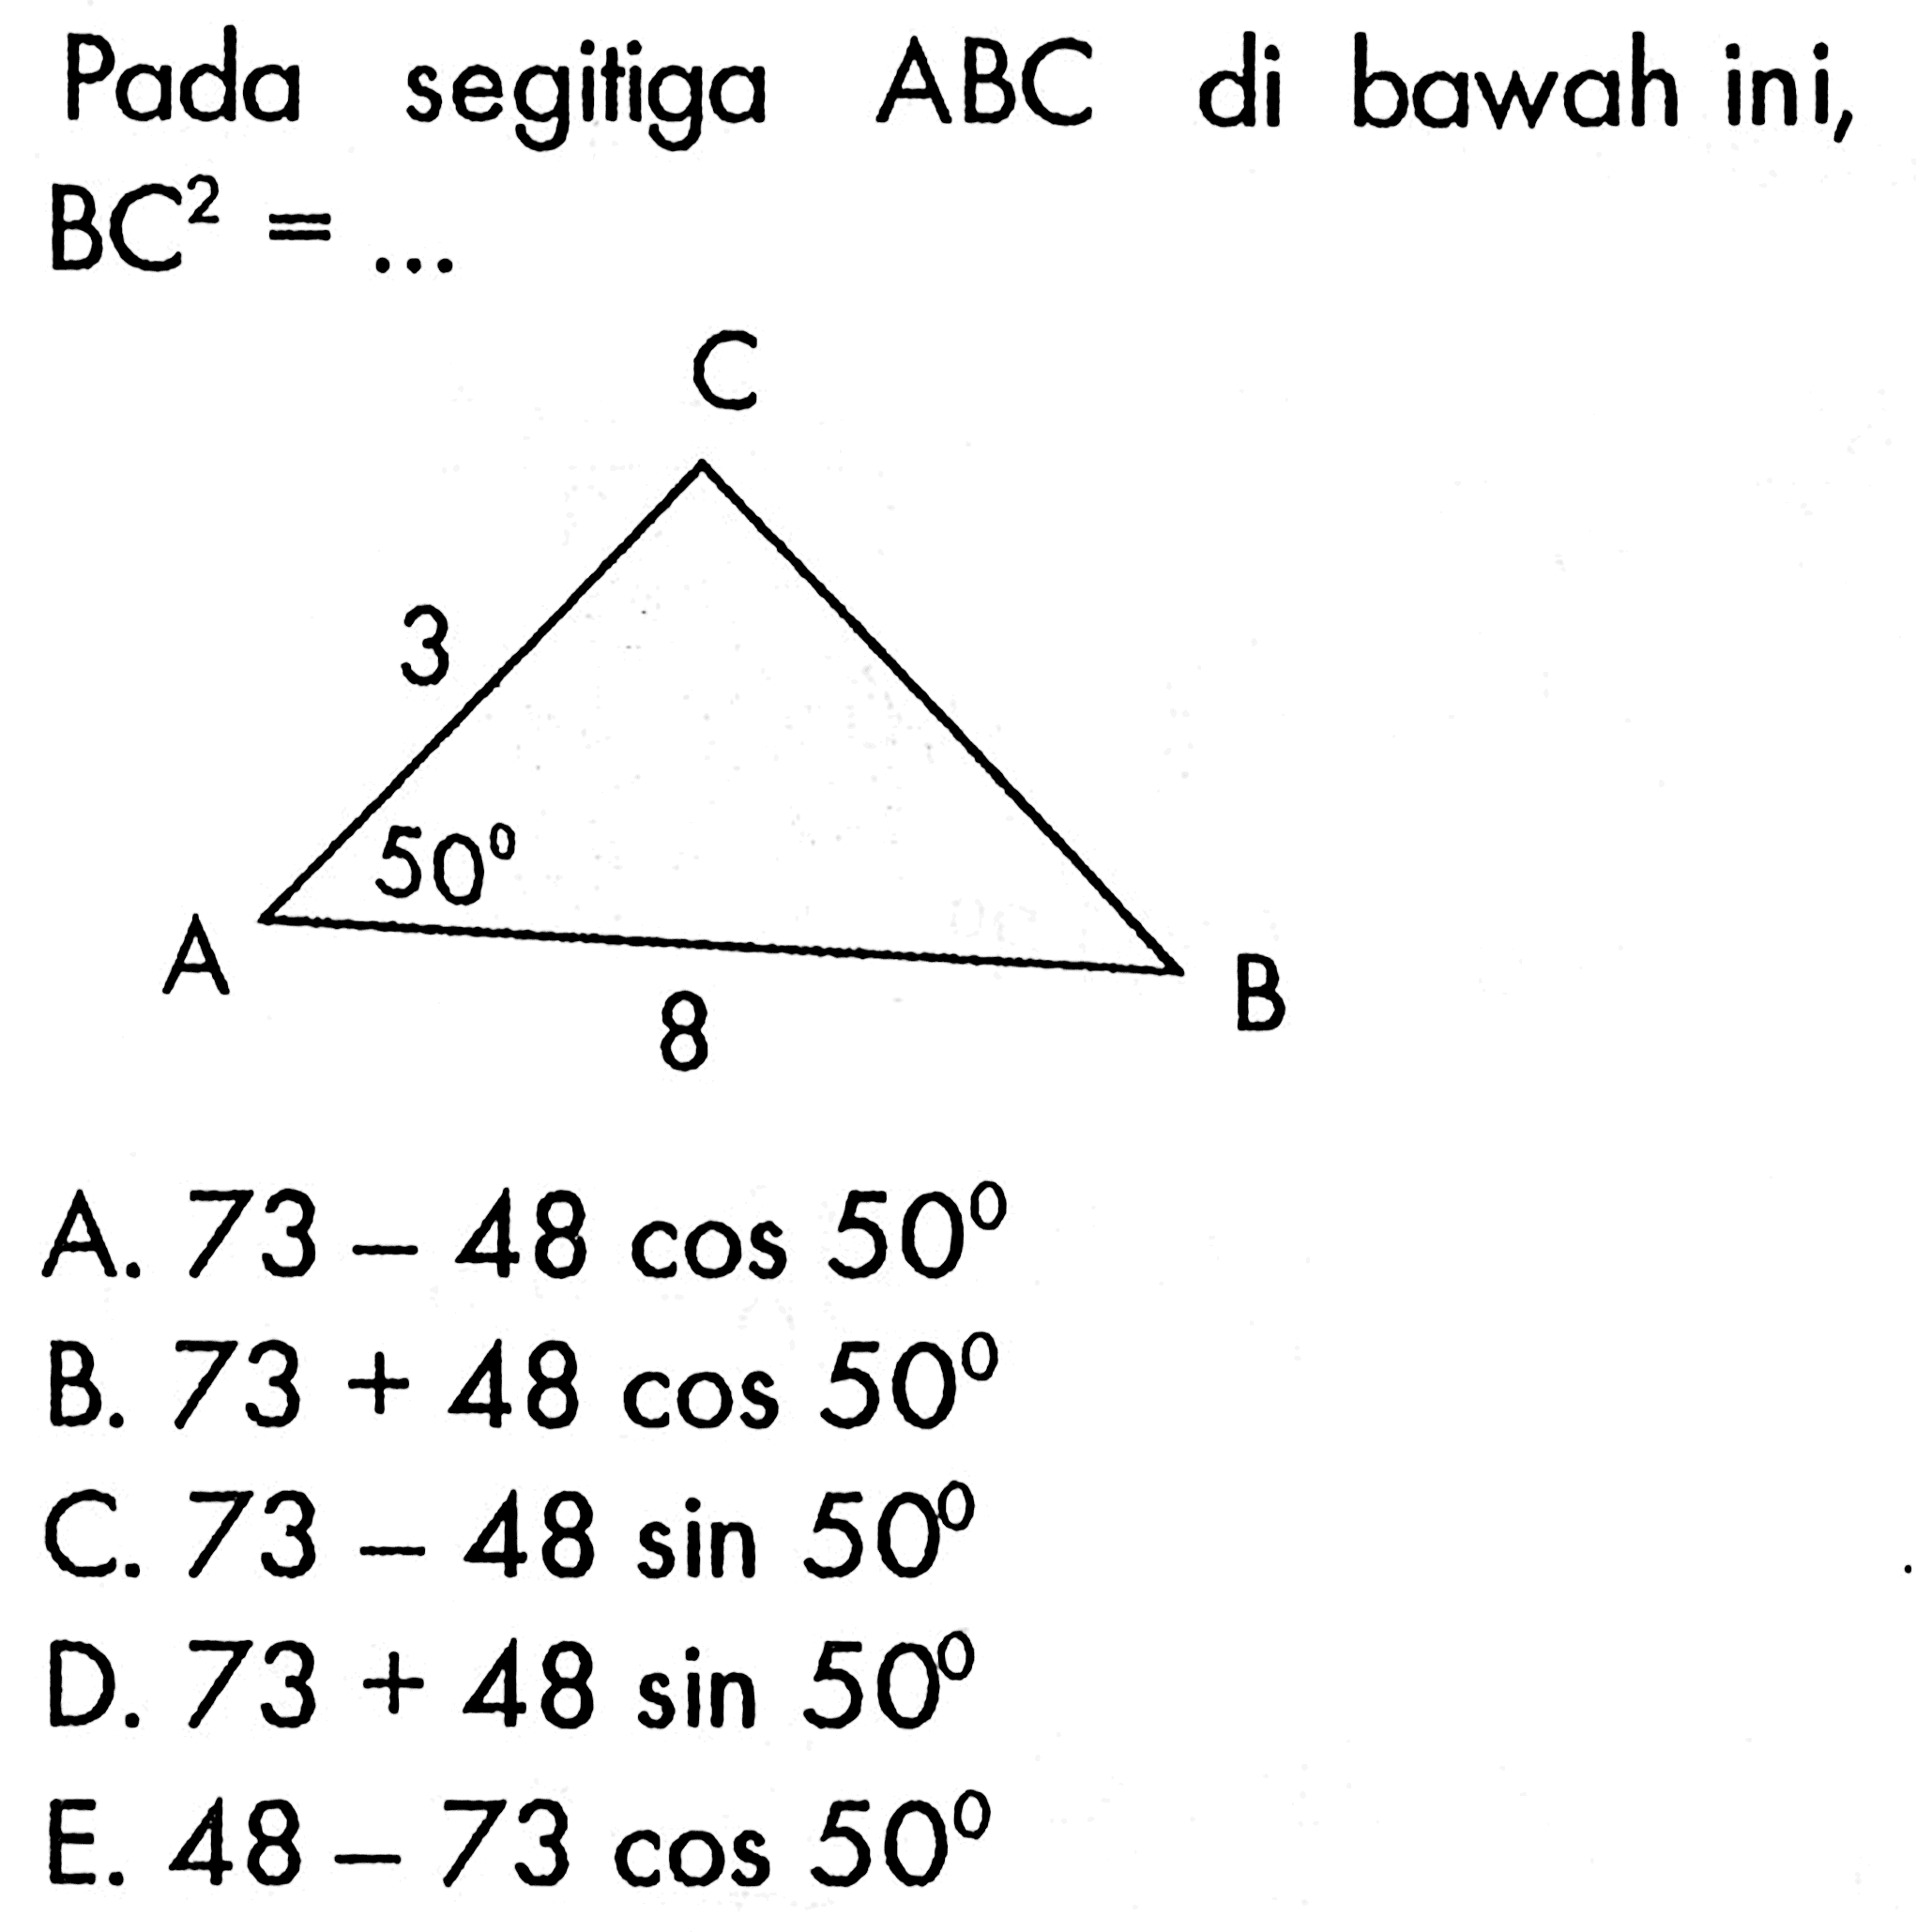 Pada segitiga  ABC  di bawah ini, A B C 3 50 8  BC^2=.... A.  73-48 cos 50 B.  73+48 cos 50 C.  73-48 sin 50 D.  73+48 sin 50 E.  48-73 cos 50 